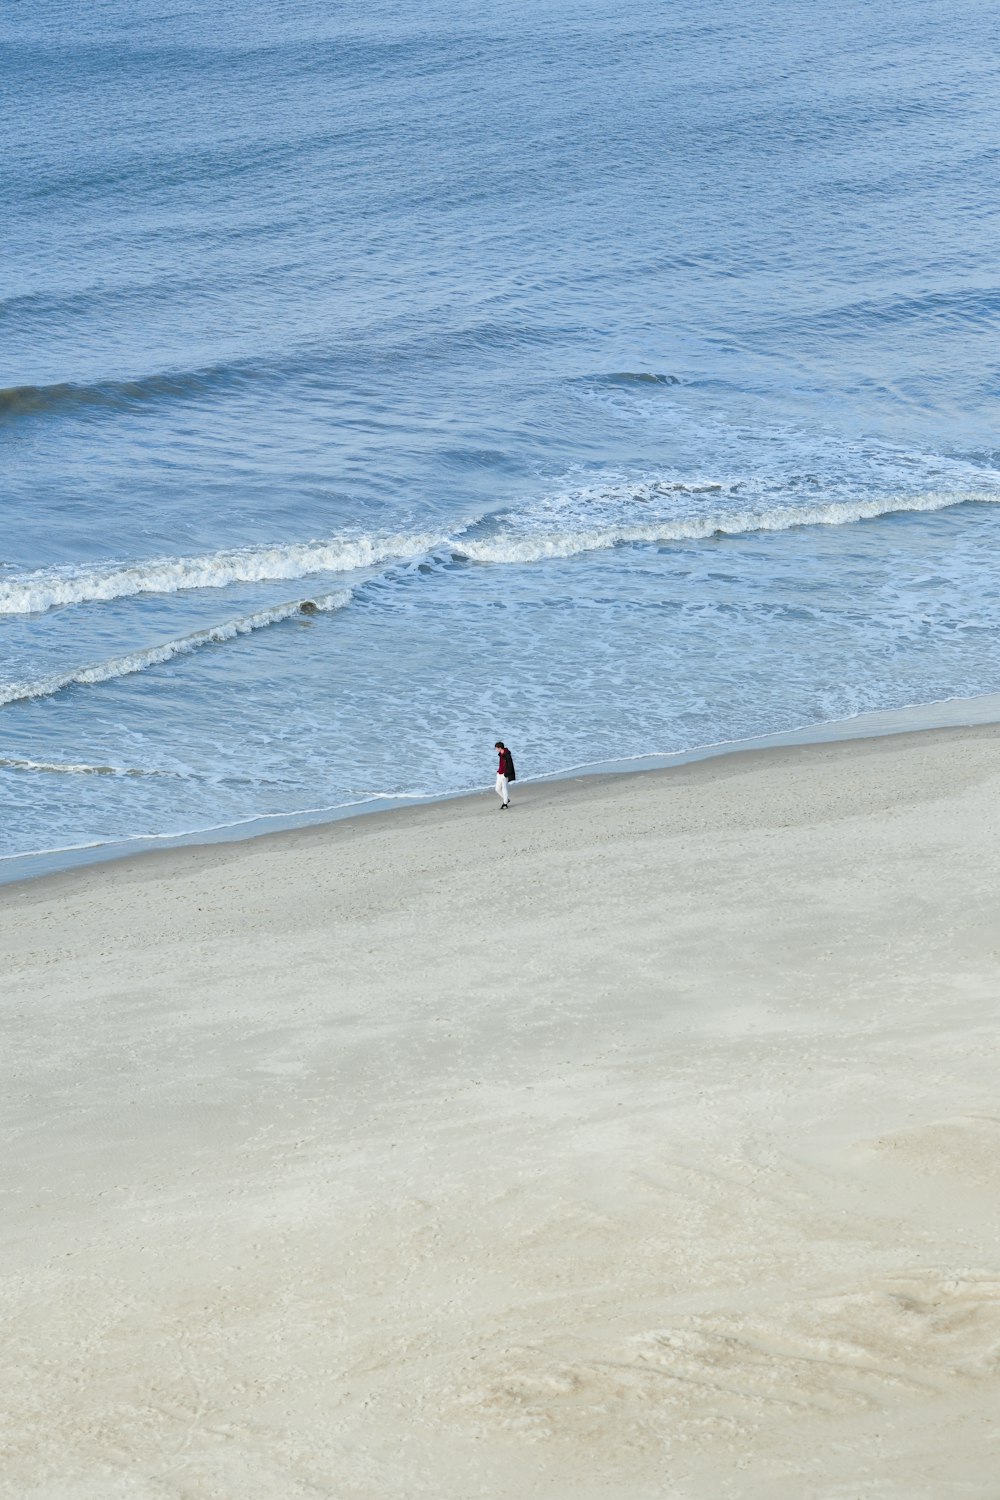 a bird standing on a beach next to the ocean